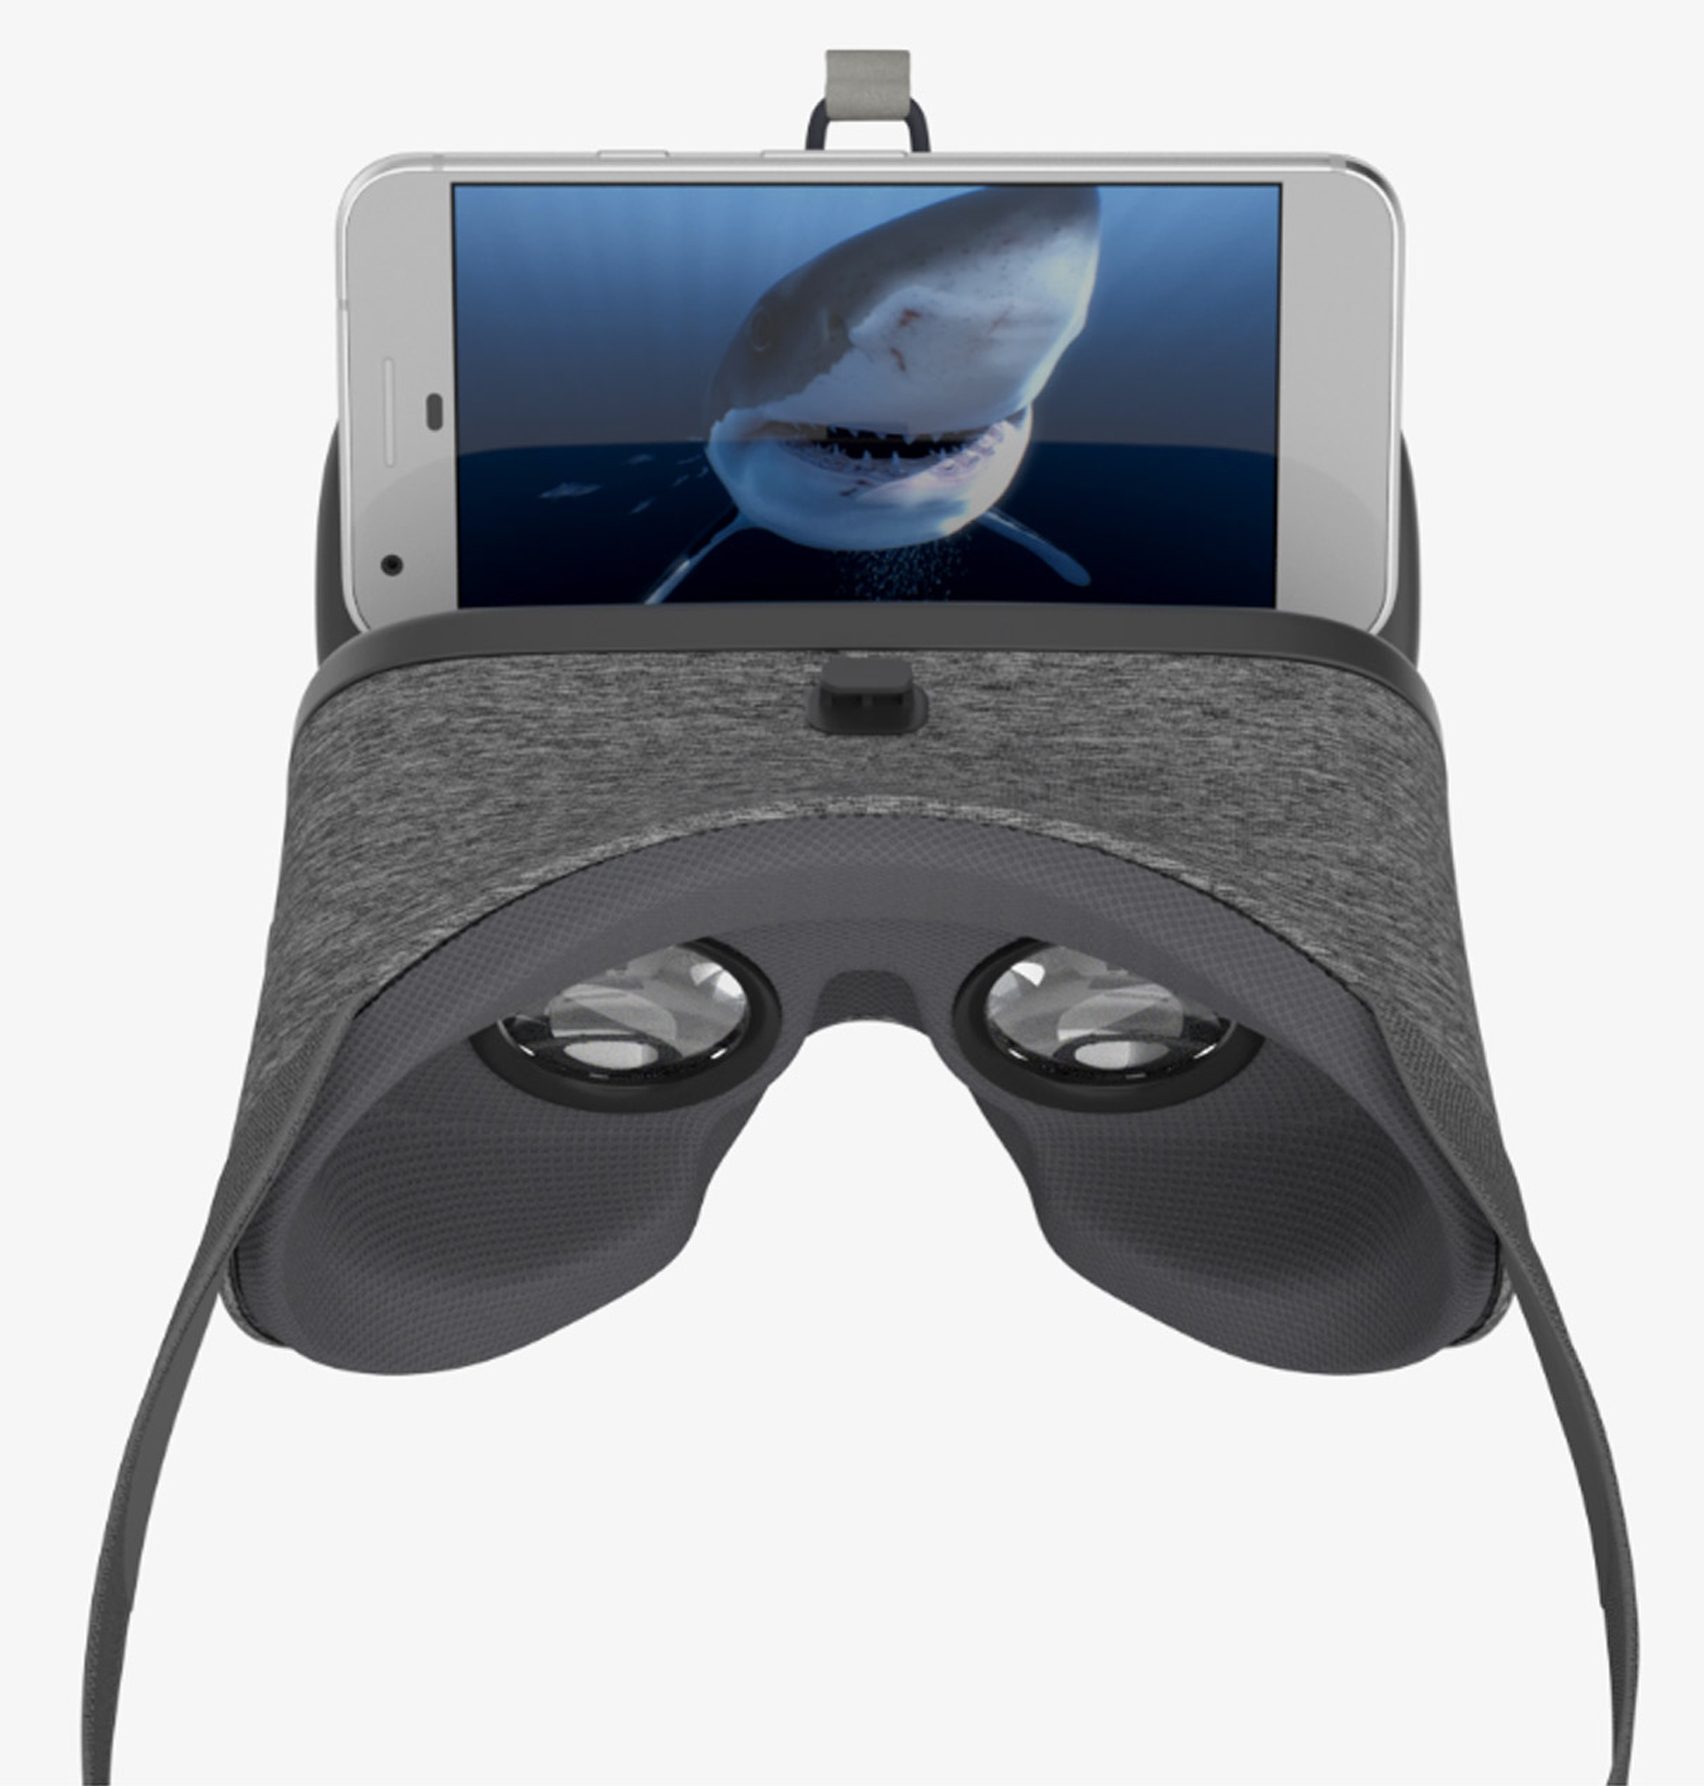 Daydream vr. Шлем виртуальной реальности. Виртуальная гарнитура. Daydream очки виртуальной реальности. Очки виртуальной реальности для смартфона Google Daydream view.